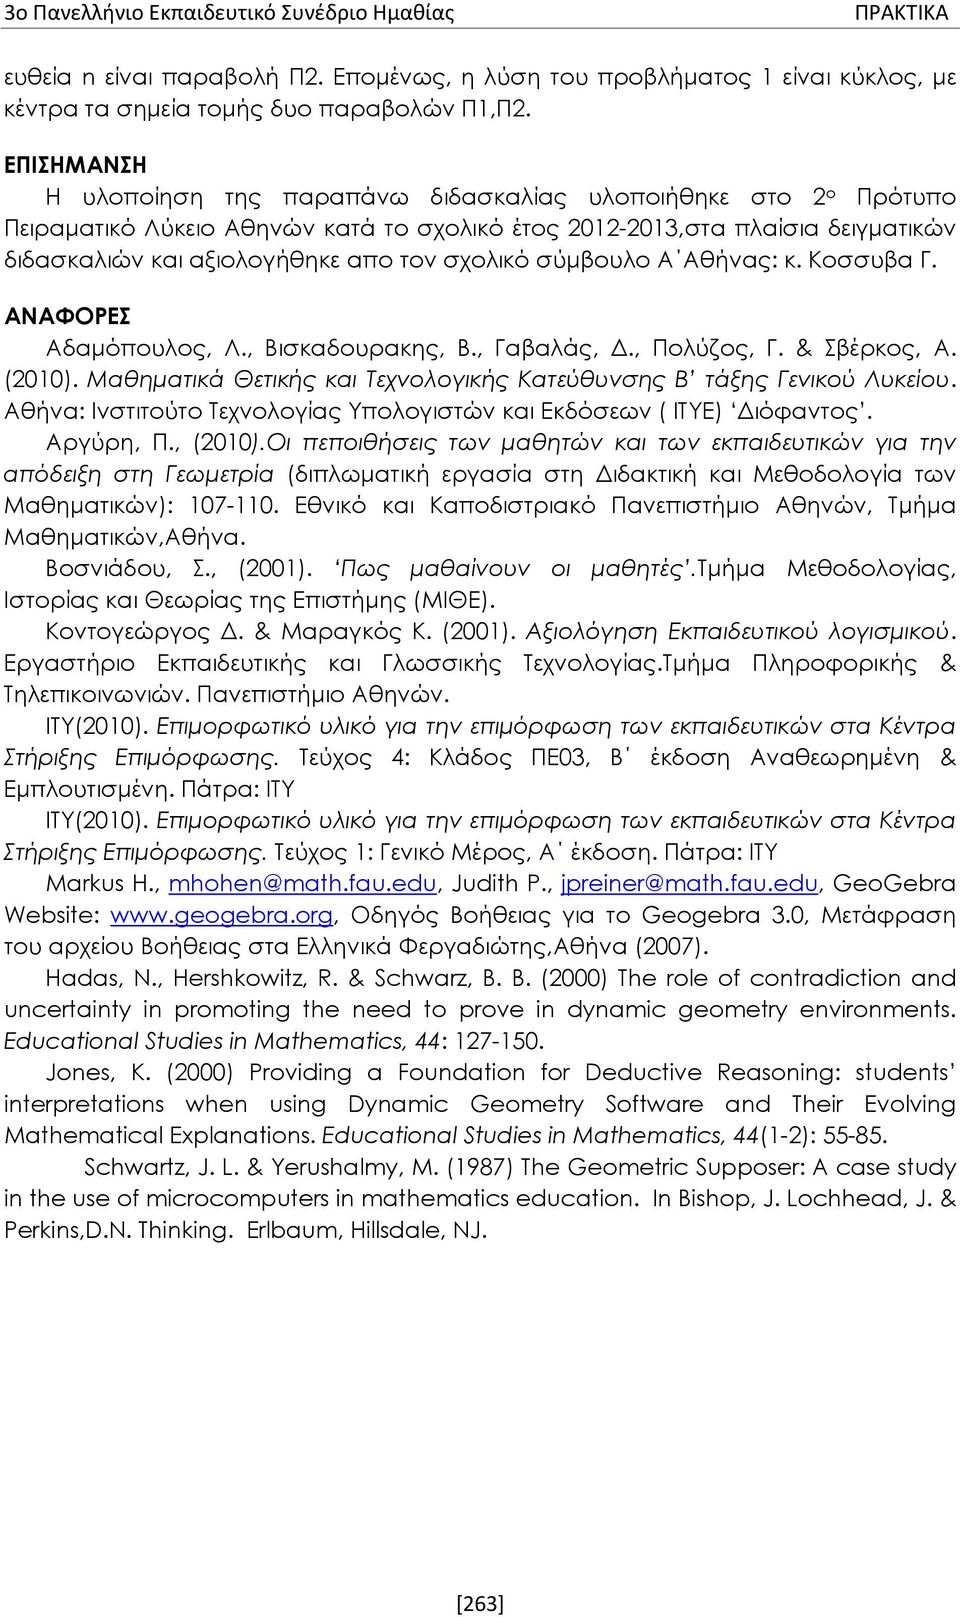 σχολικό σύμβουλο Α Αθήνας: κ. Κοσσυβα Γ. ΑΝΑΦΟΡΕΣ Αδαμόπουλος, Λ., Βισκαδουρακης, Β., Γαβαλάς, Δ., Πολύζος, Γ. & Σβέρκος, Α. (2010).